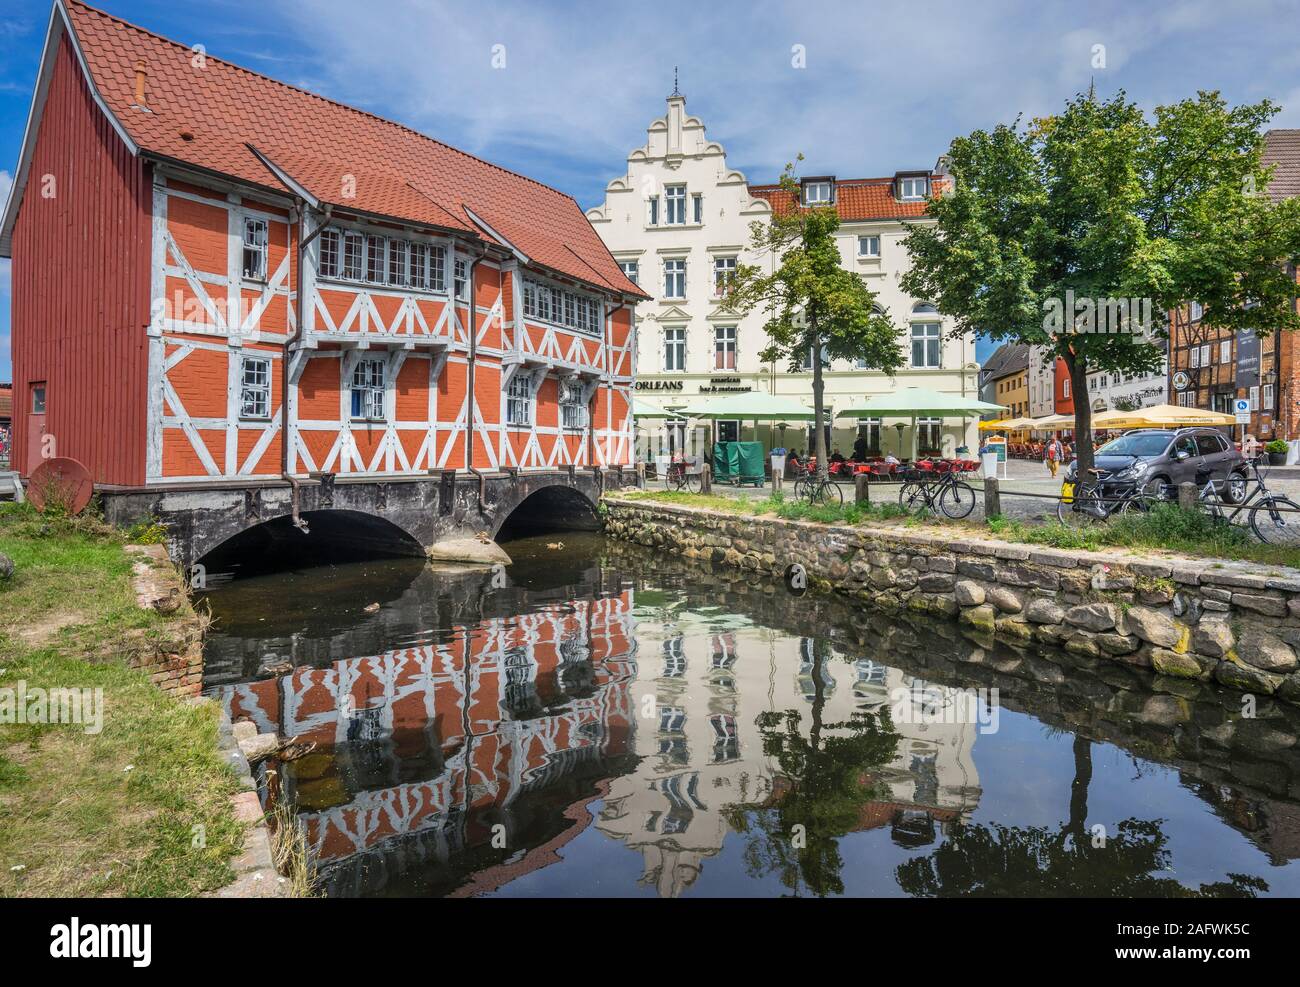 Gewölbe, también conocida como la Casa Roja es una casa de entramado medieval construido a través del río Grube en el viejo puerto de la ciudad hanseática de Wismar Foto de stock